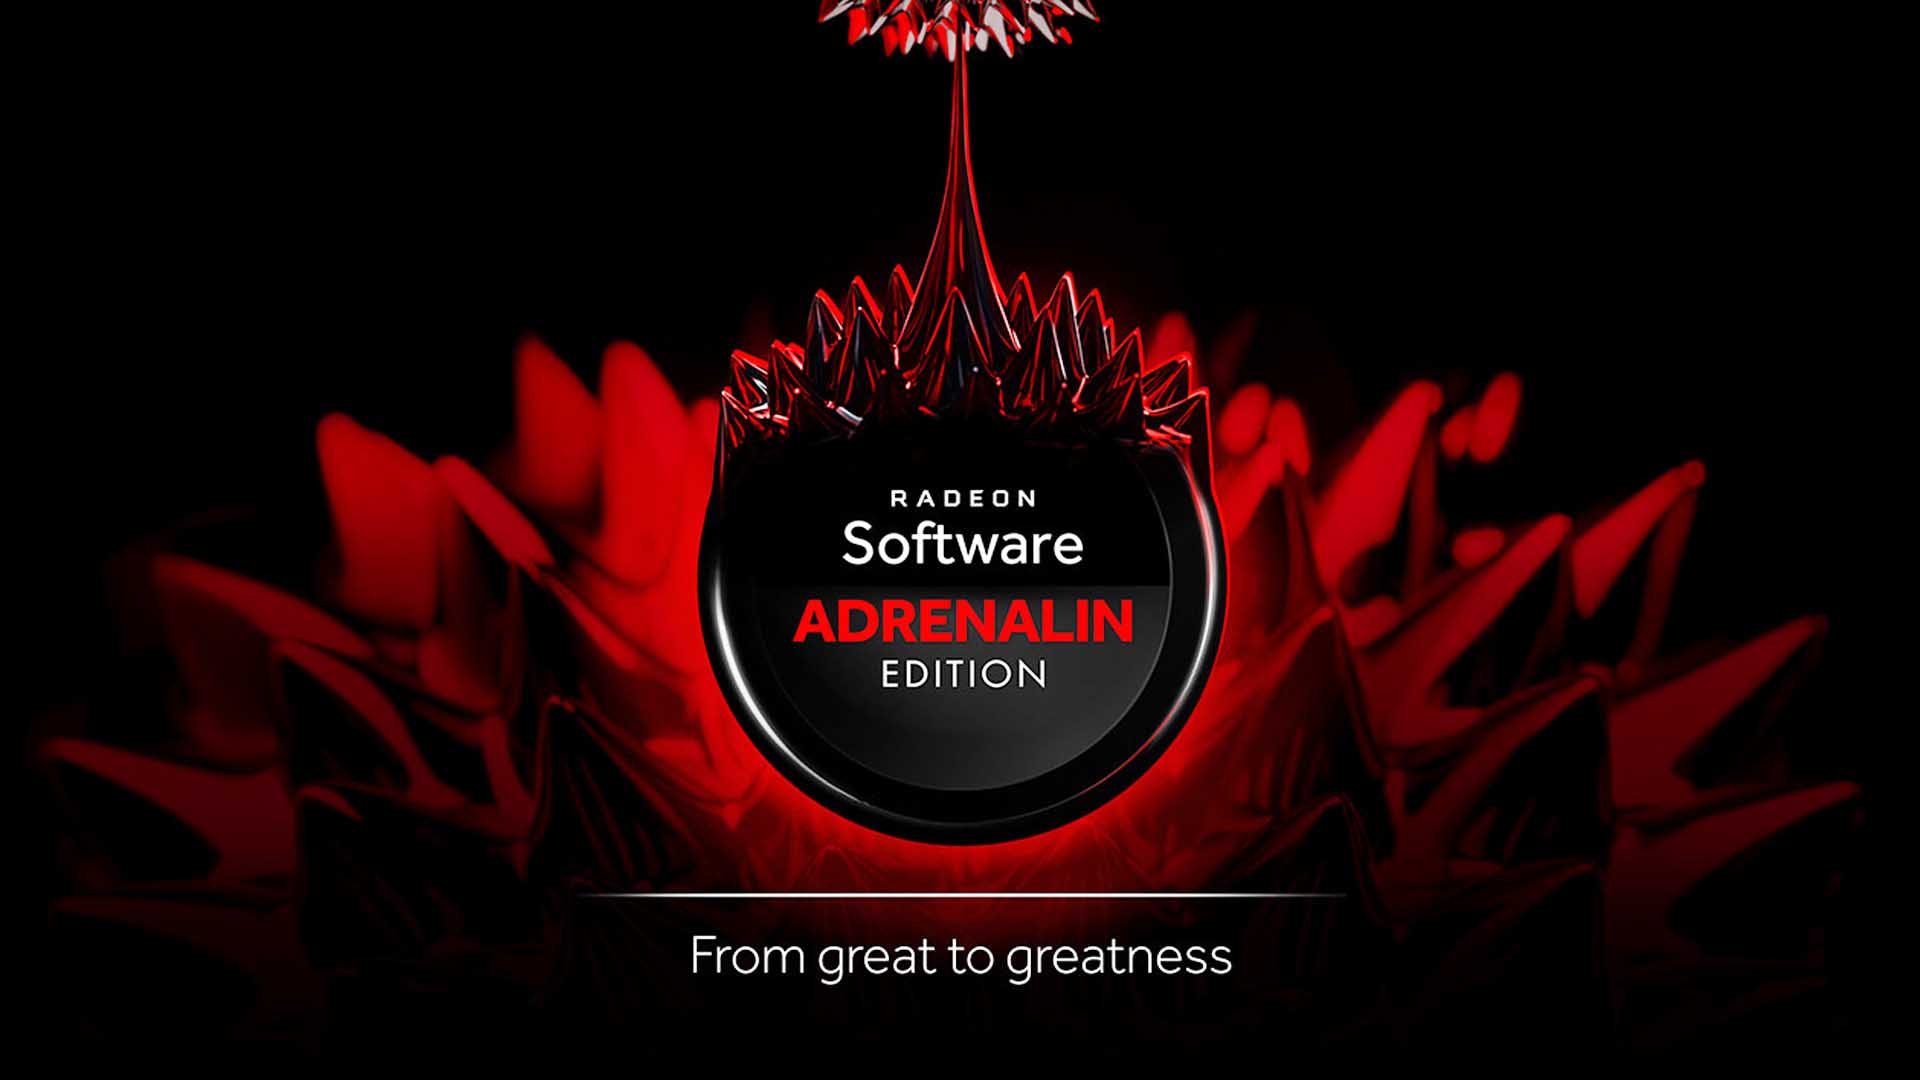 Вышел драйвер AMD Radeon Adrenalin 22.1.1, оптимизированный для God of War & Monster Hunter Rise